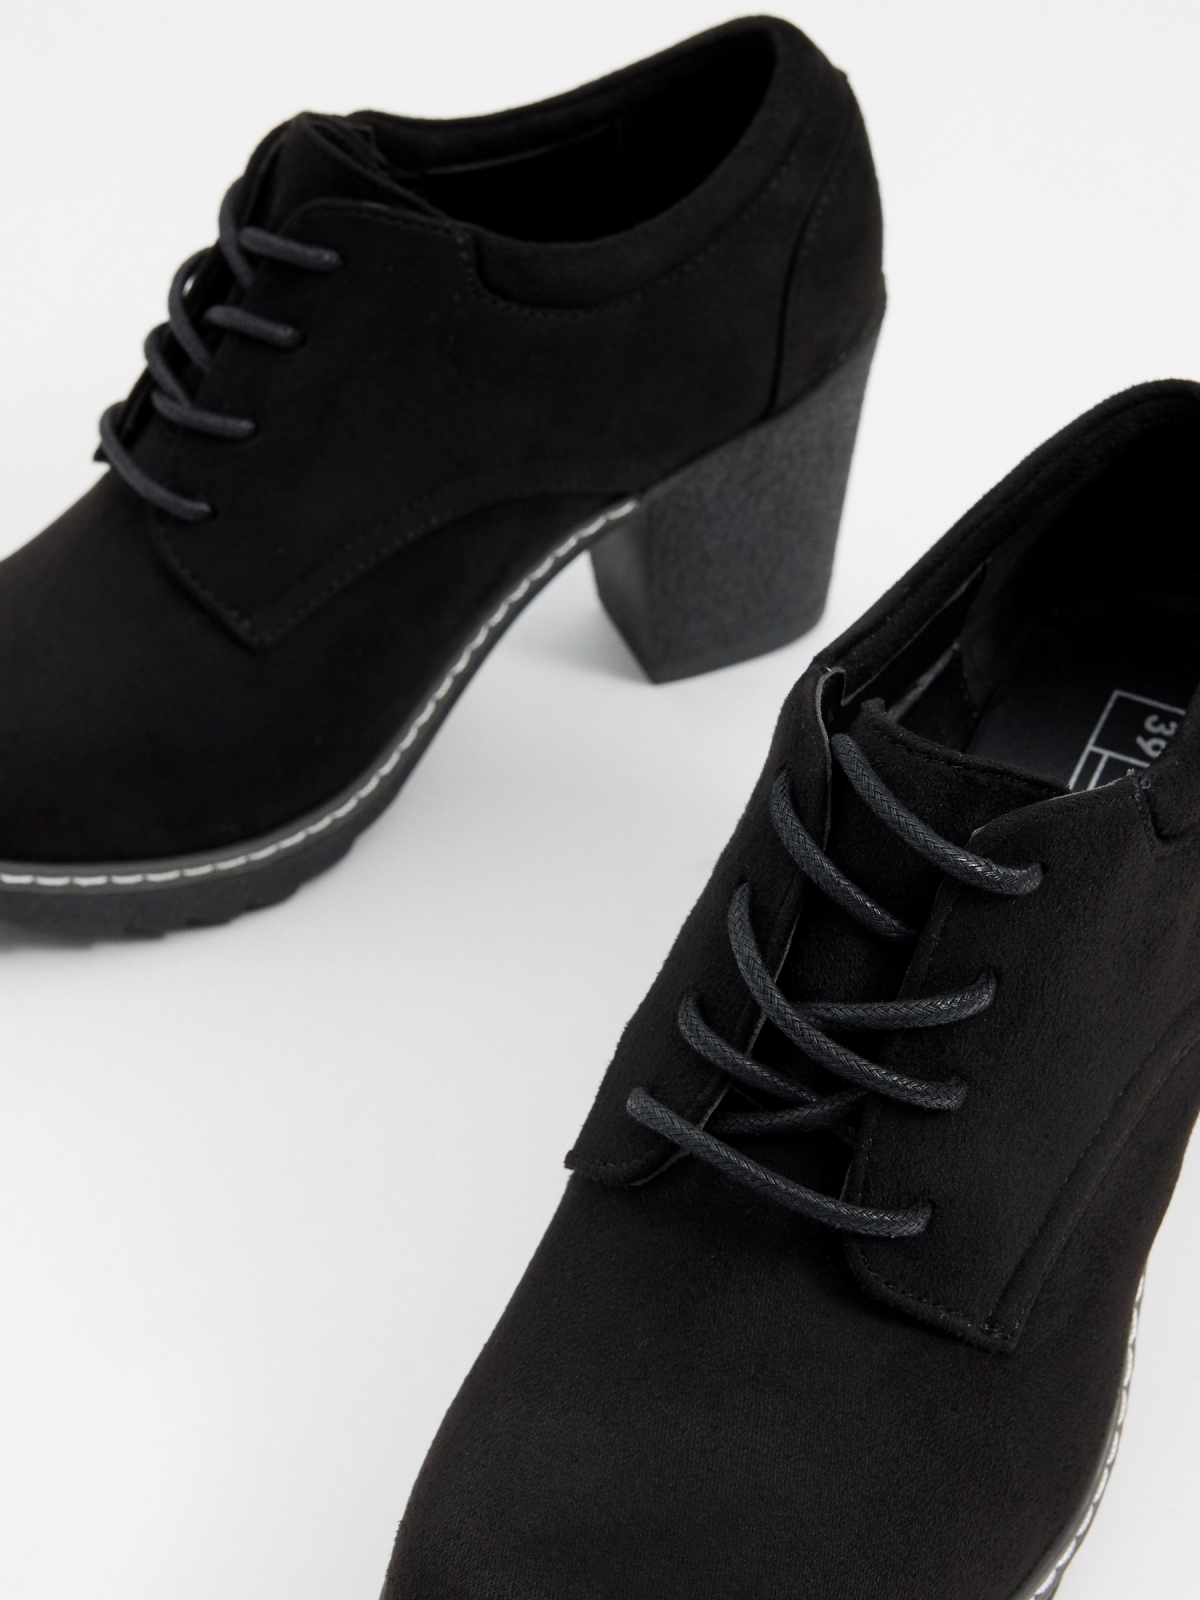 Sapato preto de salto alto com cadarço preto